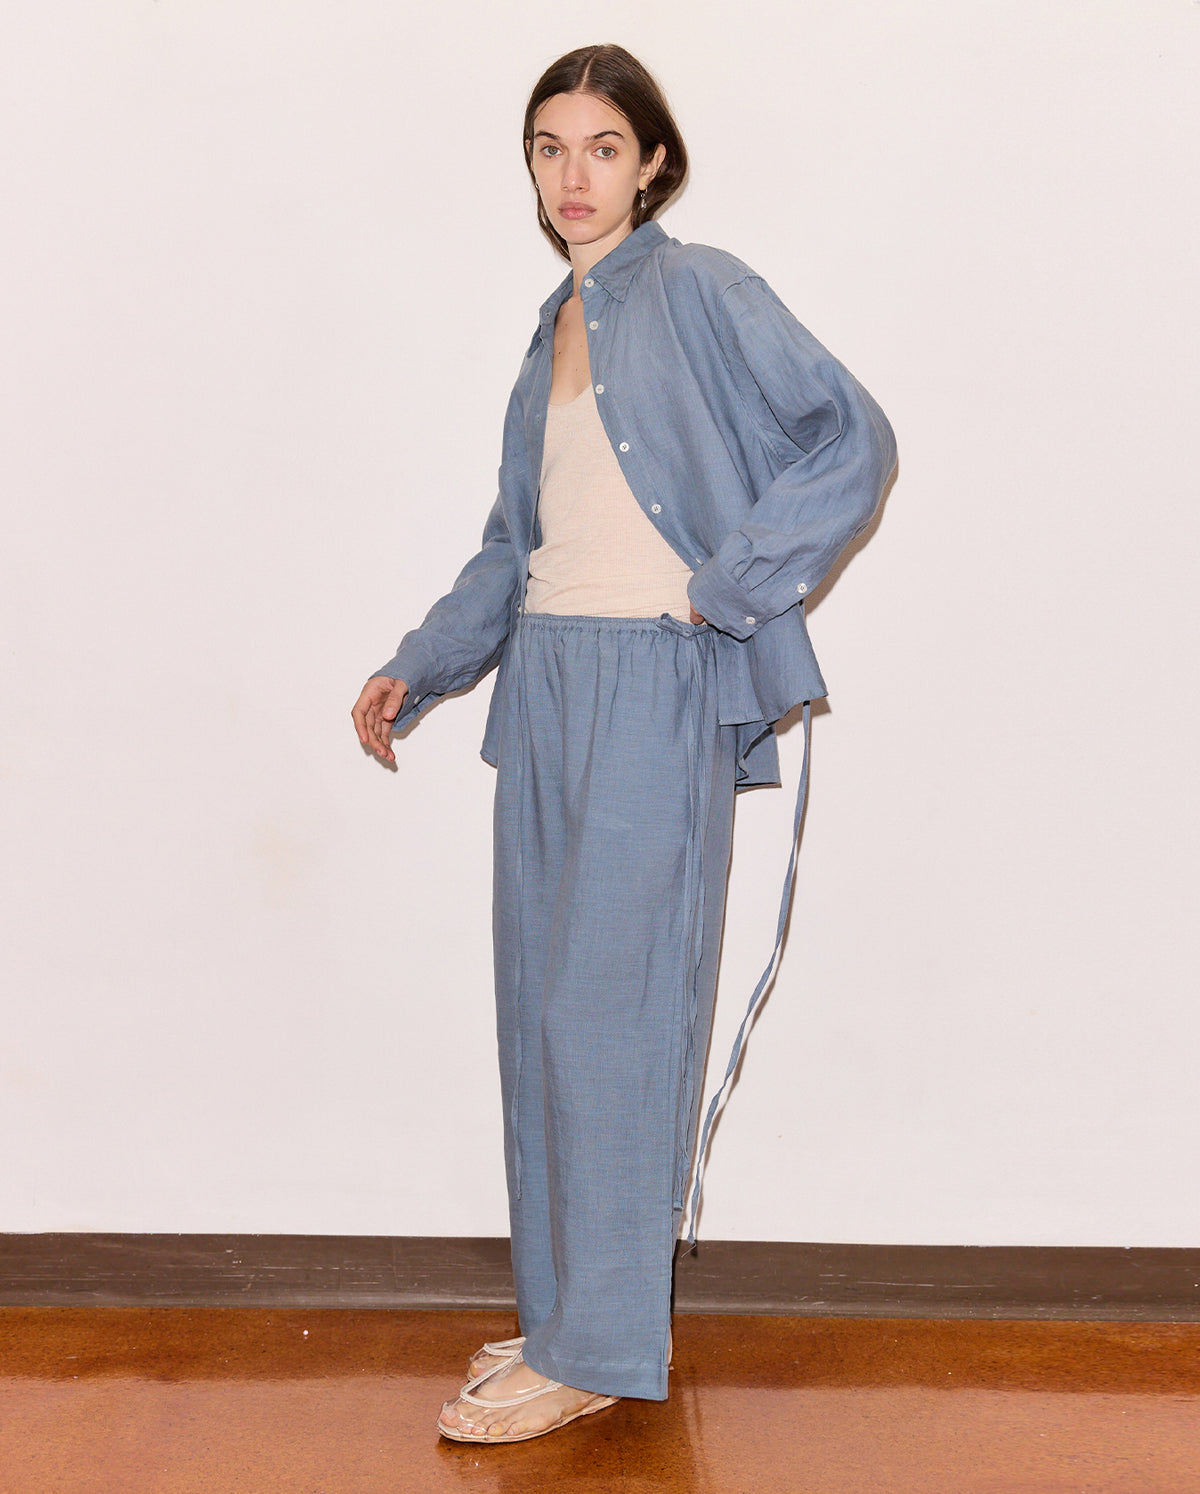 deiji studios matching set pajamas for women blue